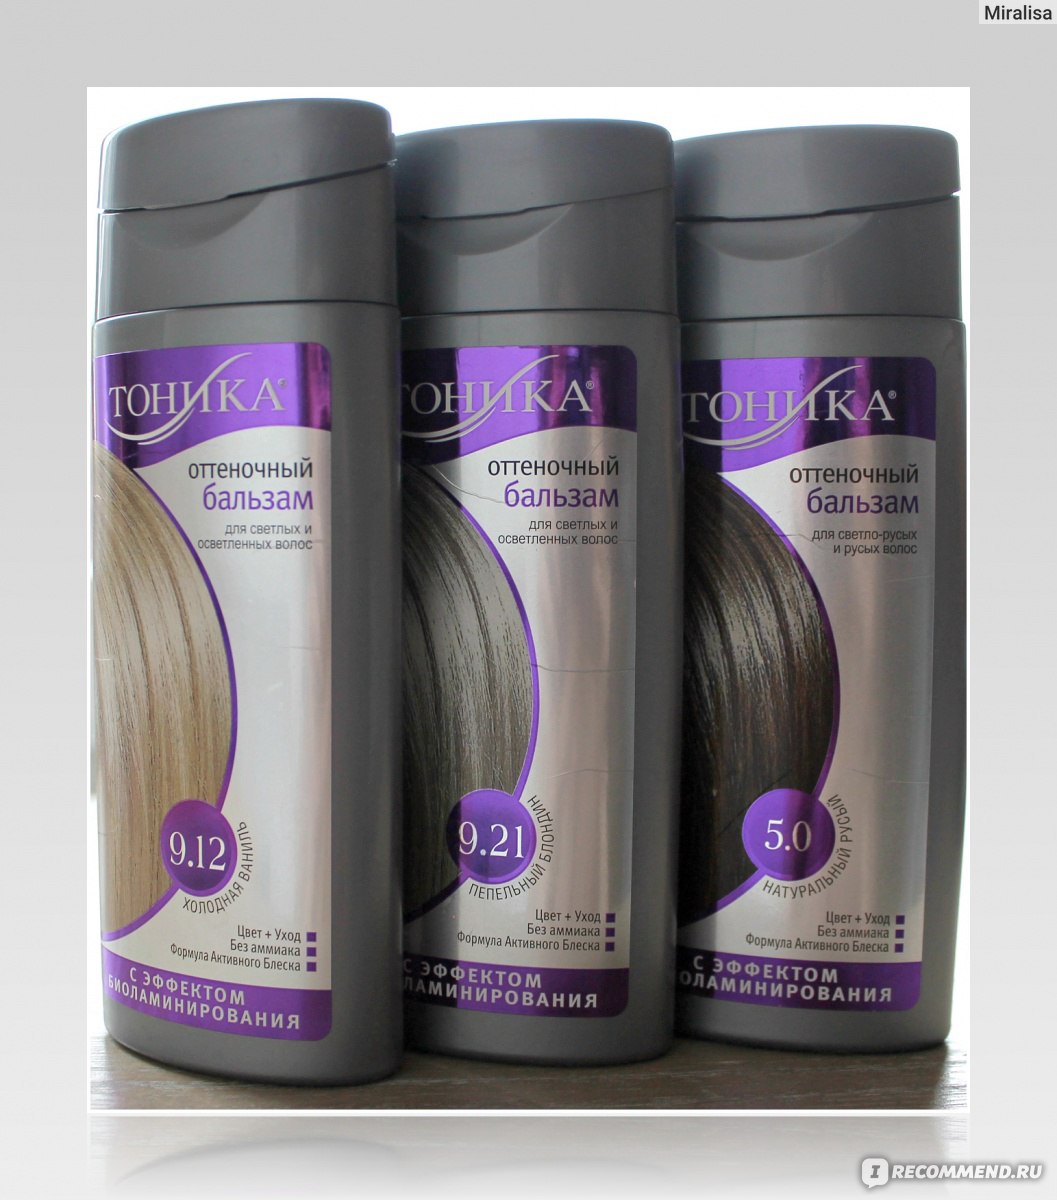 Тоника Бальзам для волос оттеночный, оттенок 5.0 Натуральный русый